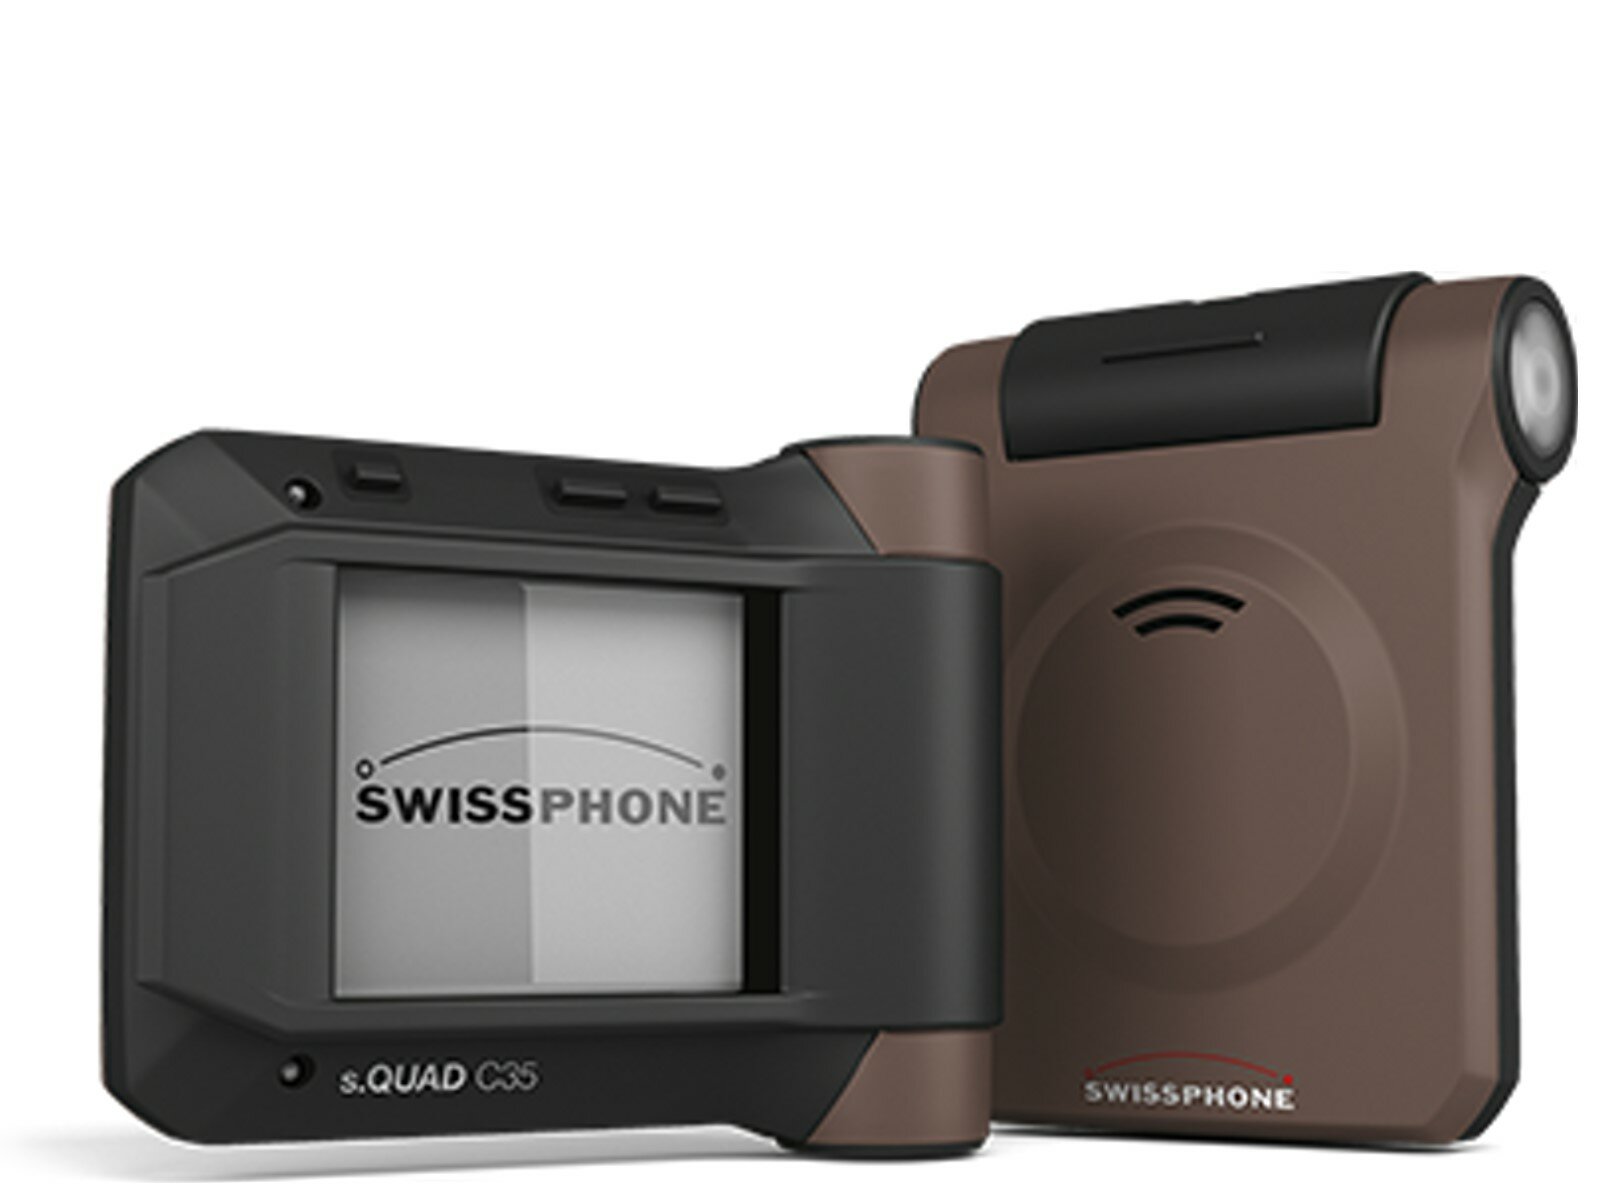 Swissphone s.QUAD C35 MK